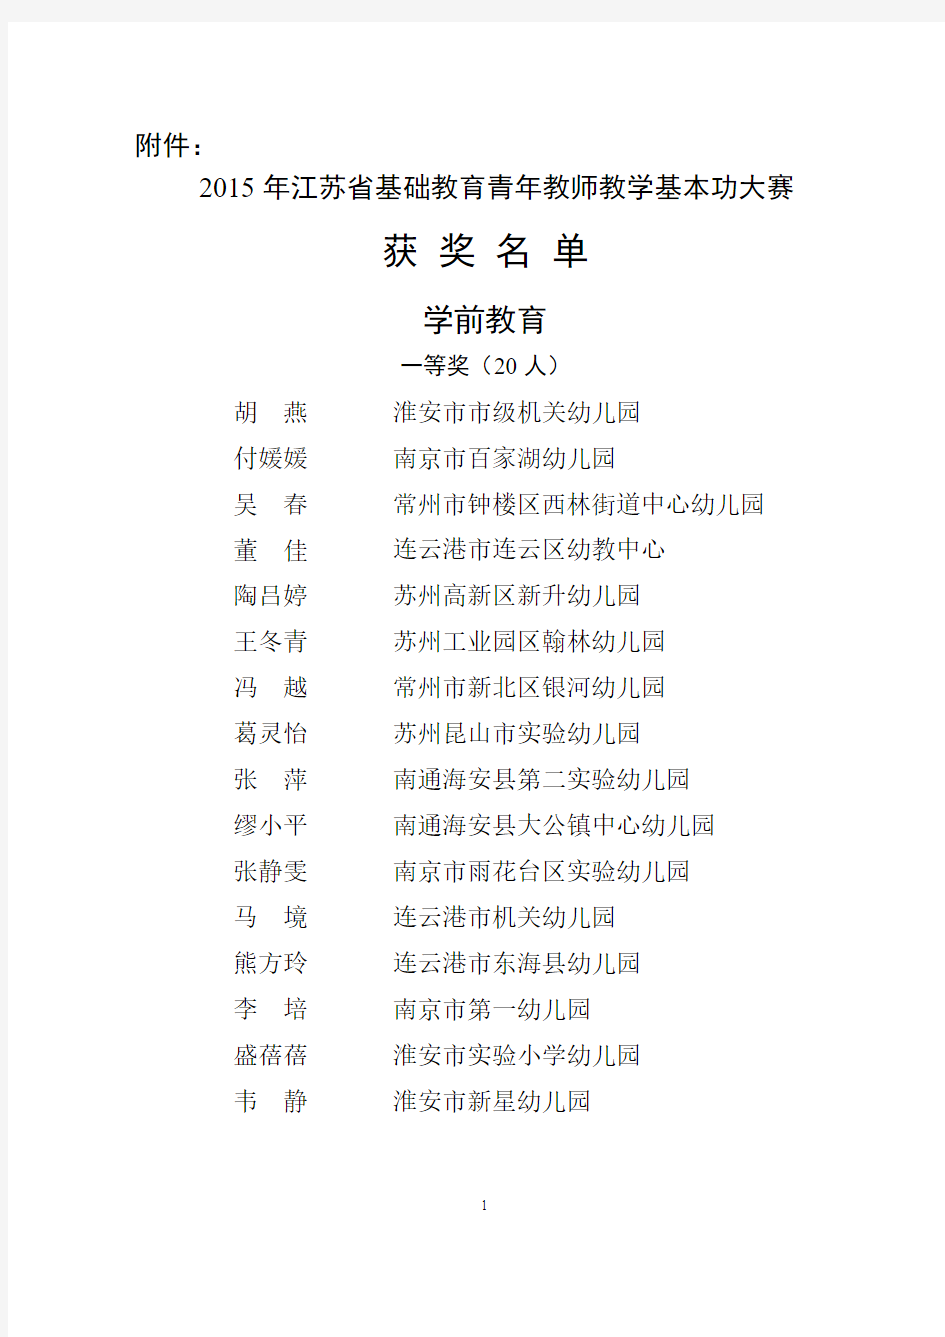 2015年江苏省基础教育青年教师教学基本功大赛获奖名单